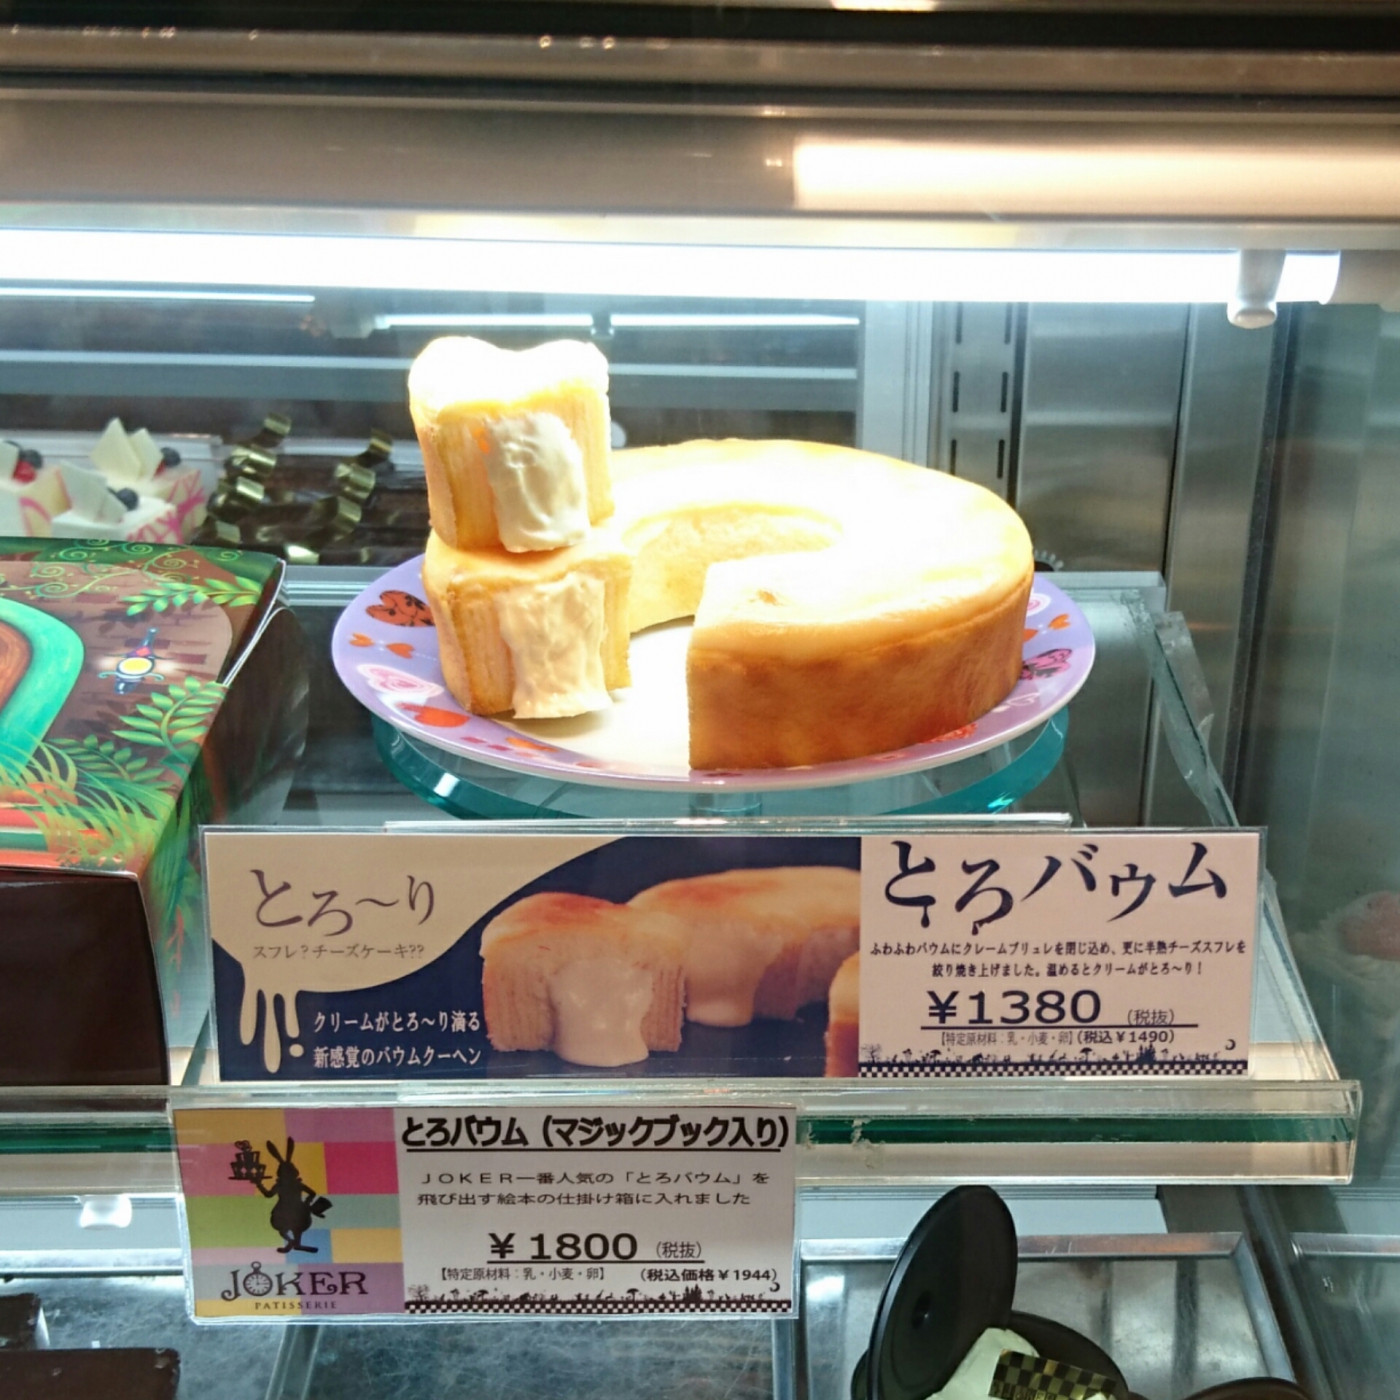 枚方のワンダーランド ファンタジーいっぱいのケーキ屋さん Joker ラディッシュスタイル 神戸の暮らしを楽しく快適節約生活